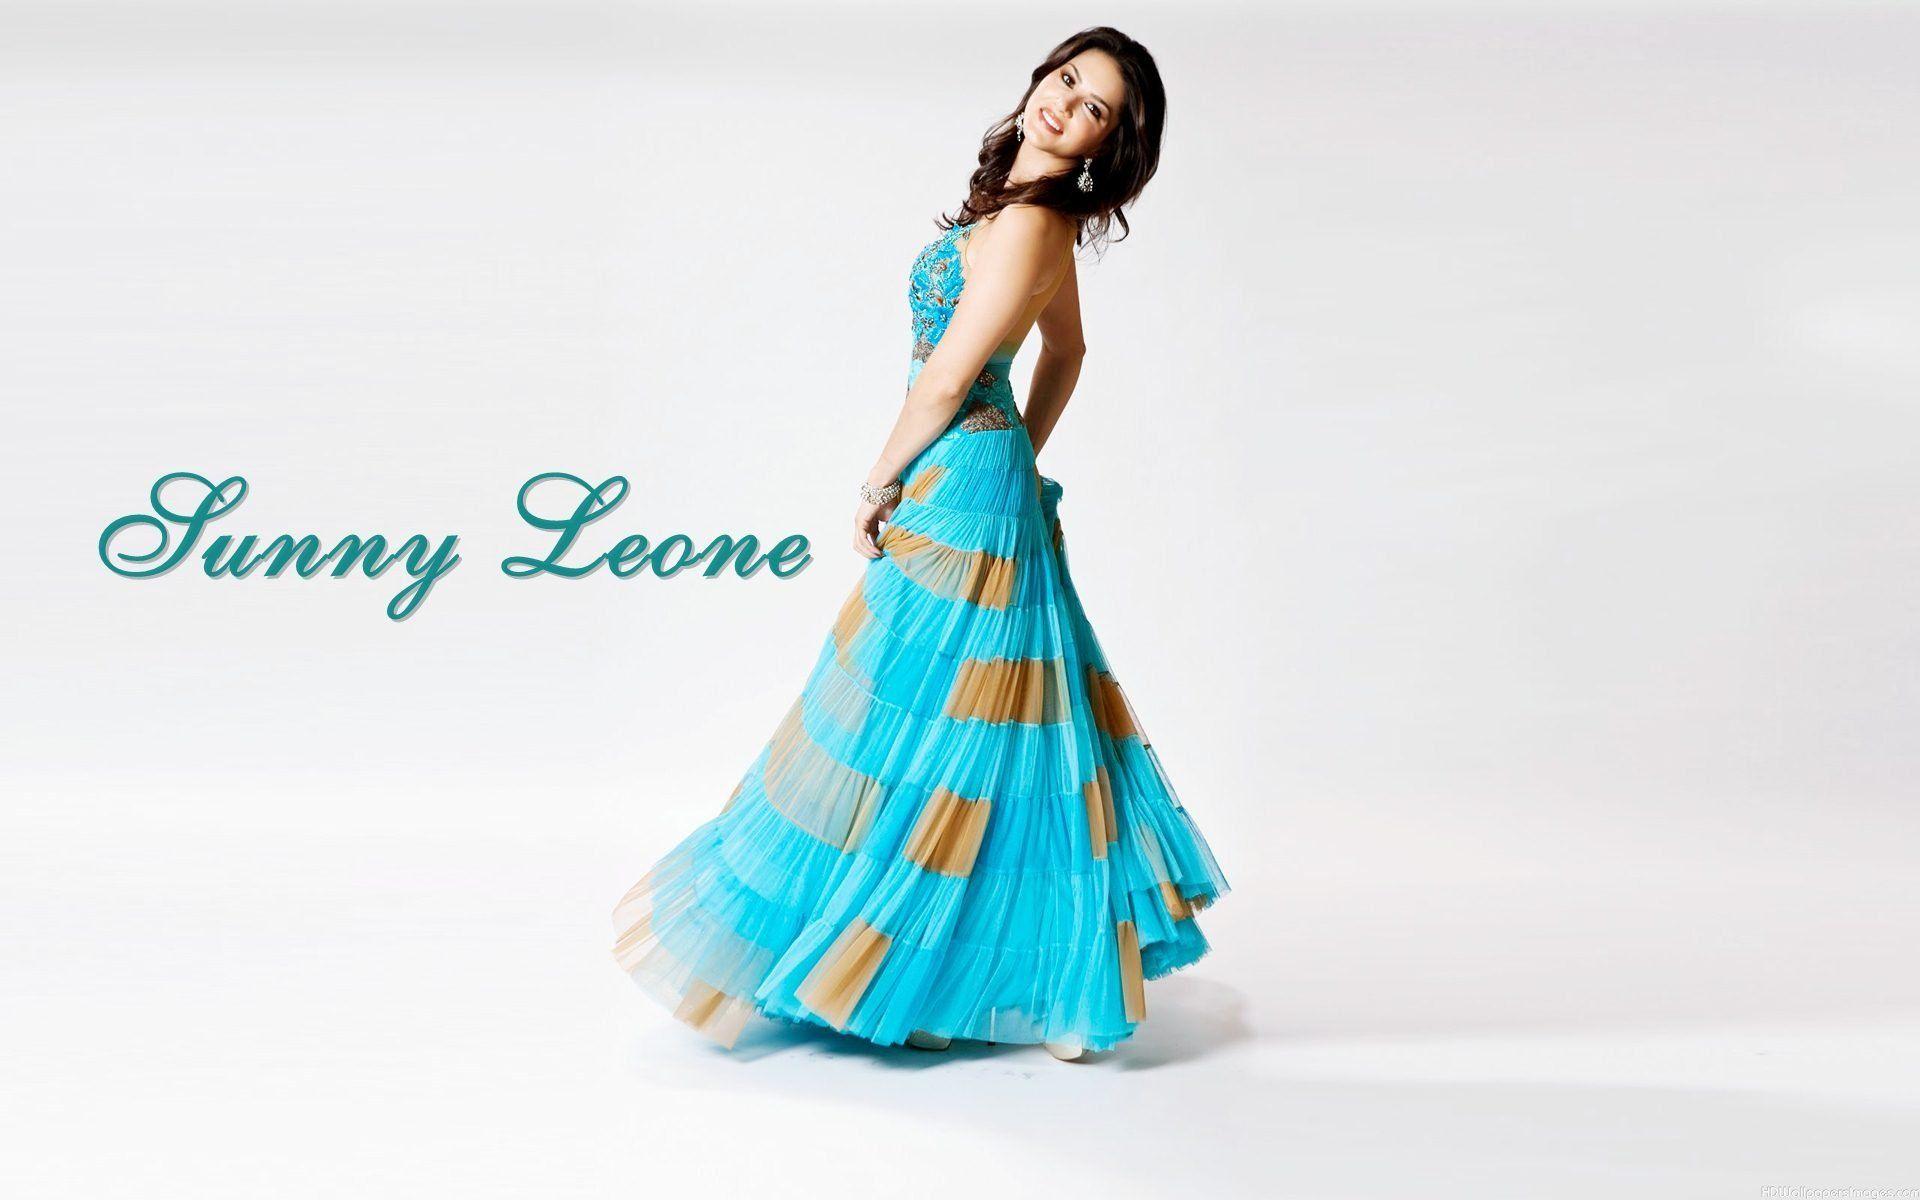 Sunny Leone Wears Gown Dress Wallpaper